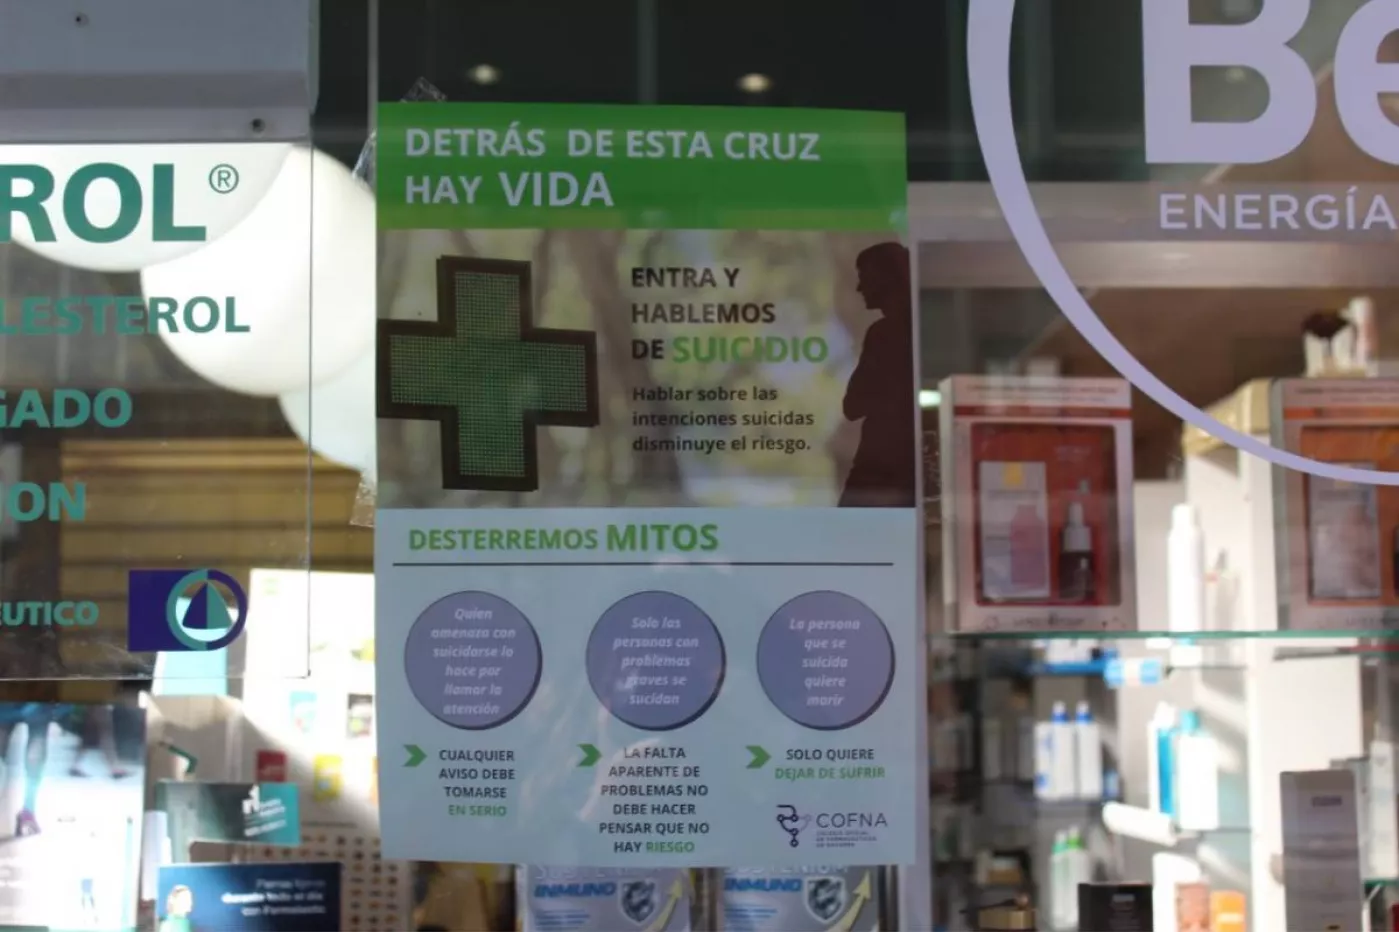 Las farmacias navarras, como la de la imagen, ya tienen visible el cartel informativo de la campaña del COF de Navarra para la prevención del suicidio.